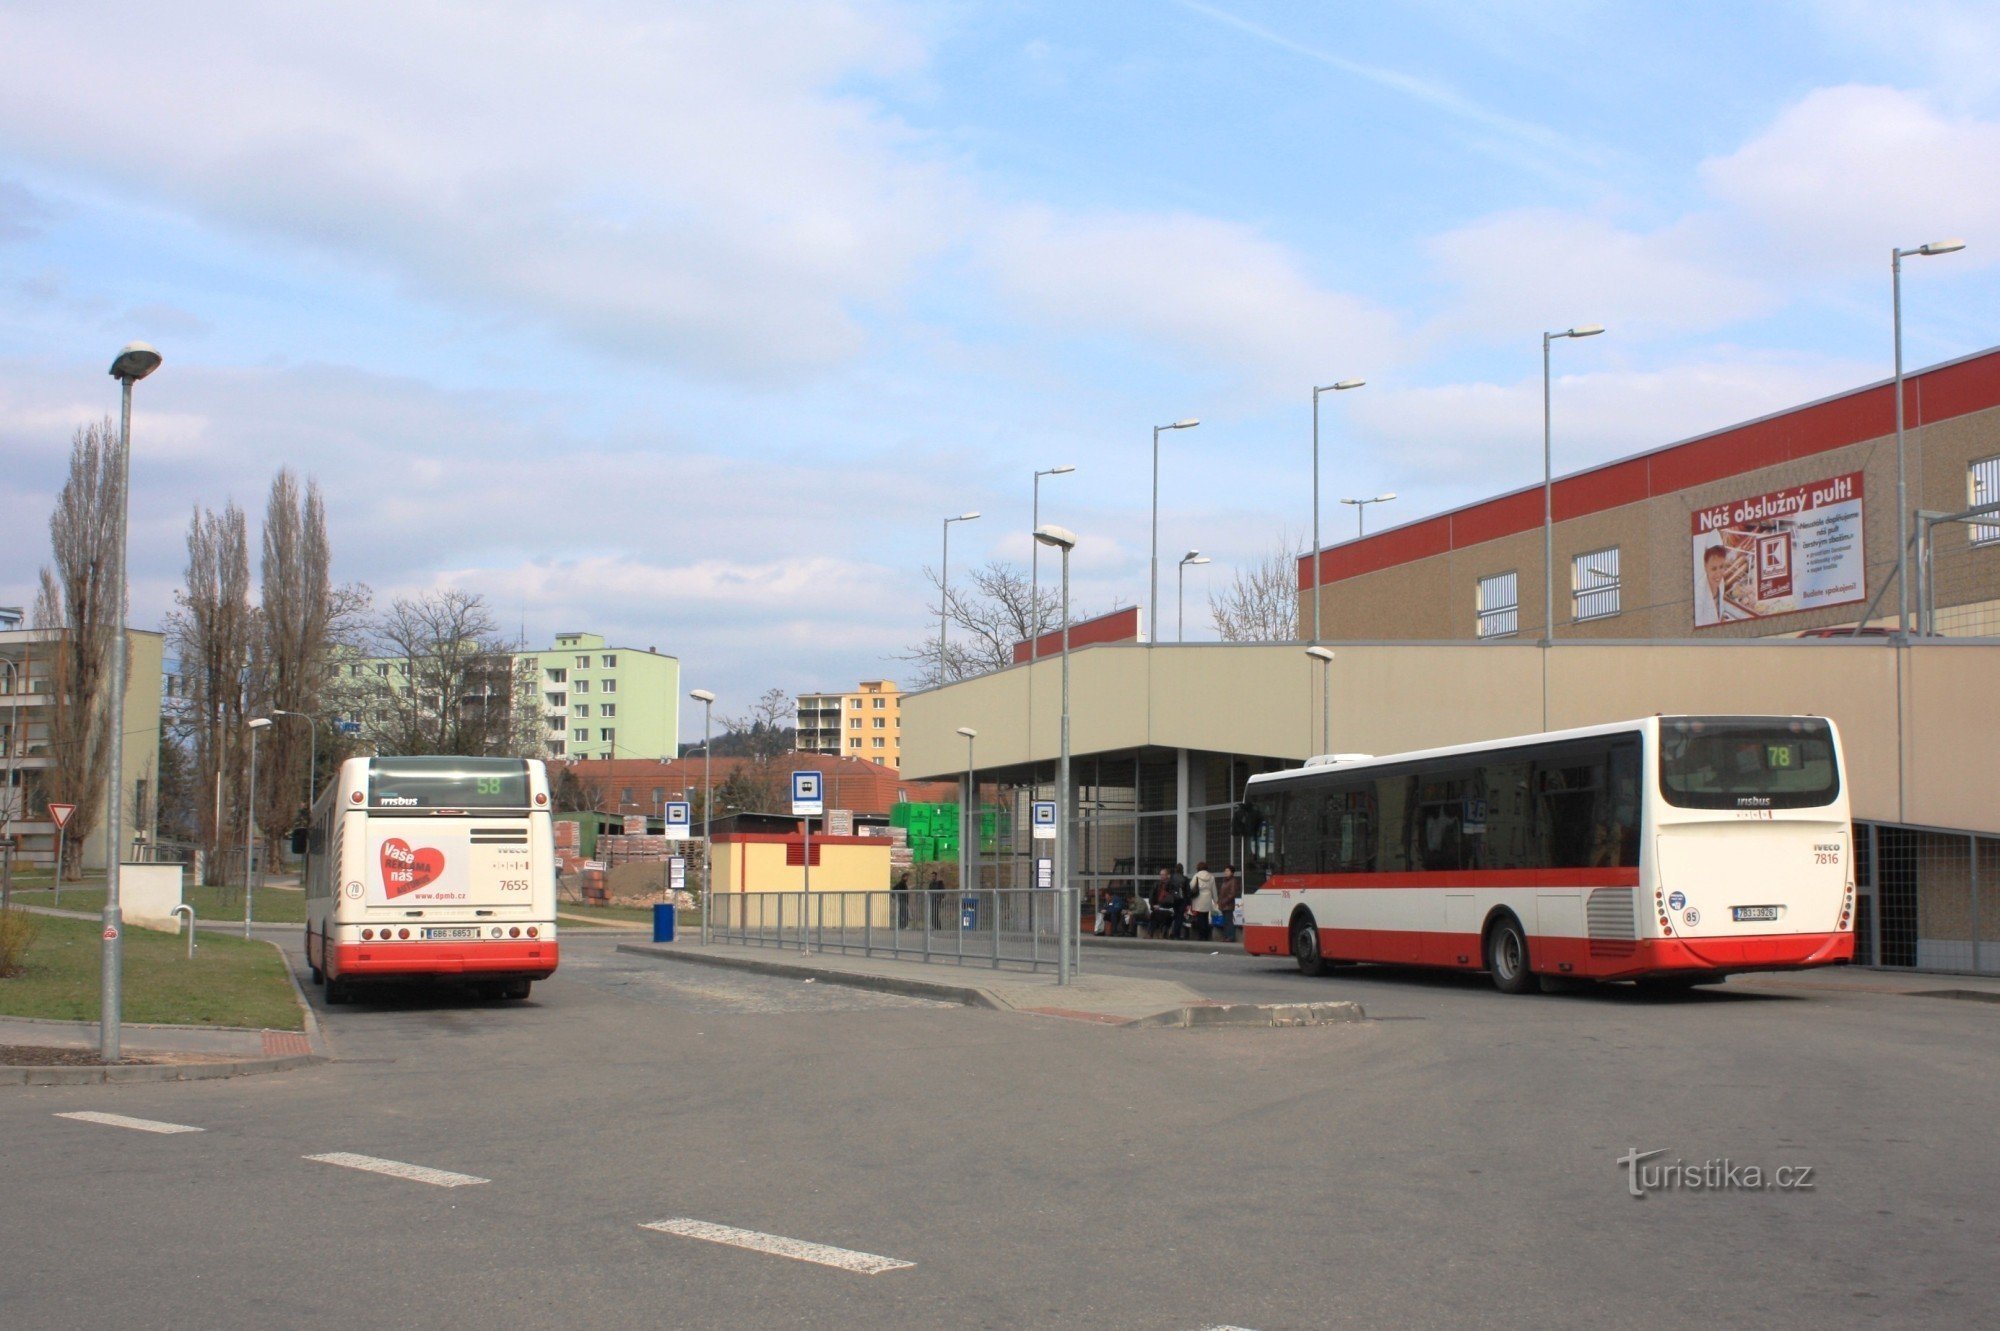 Brno-Židenice - busstoppested